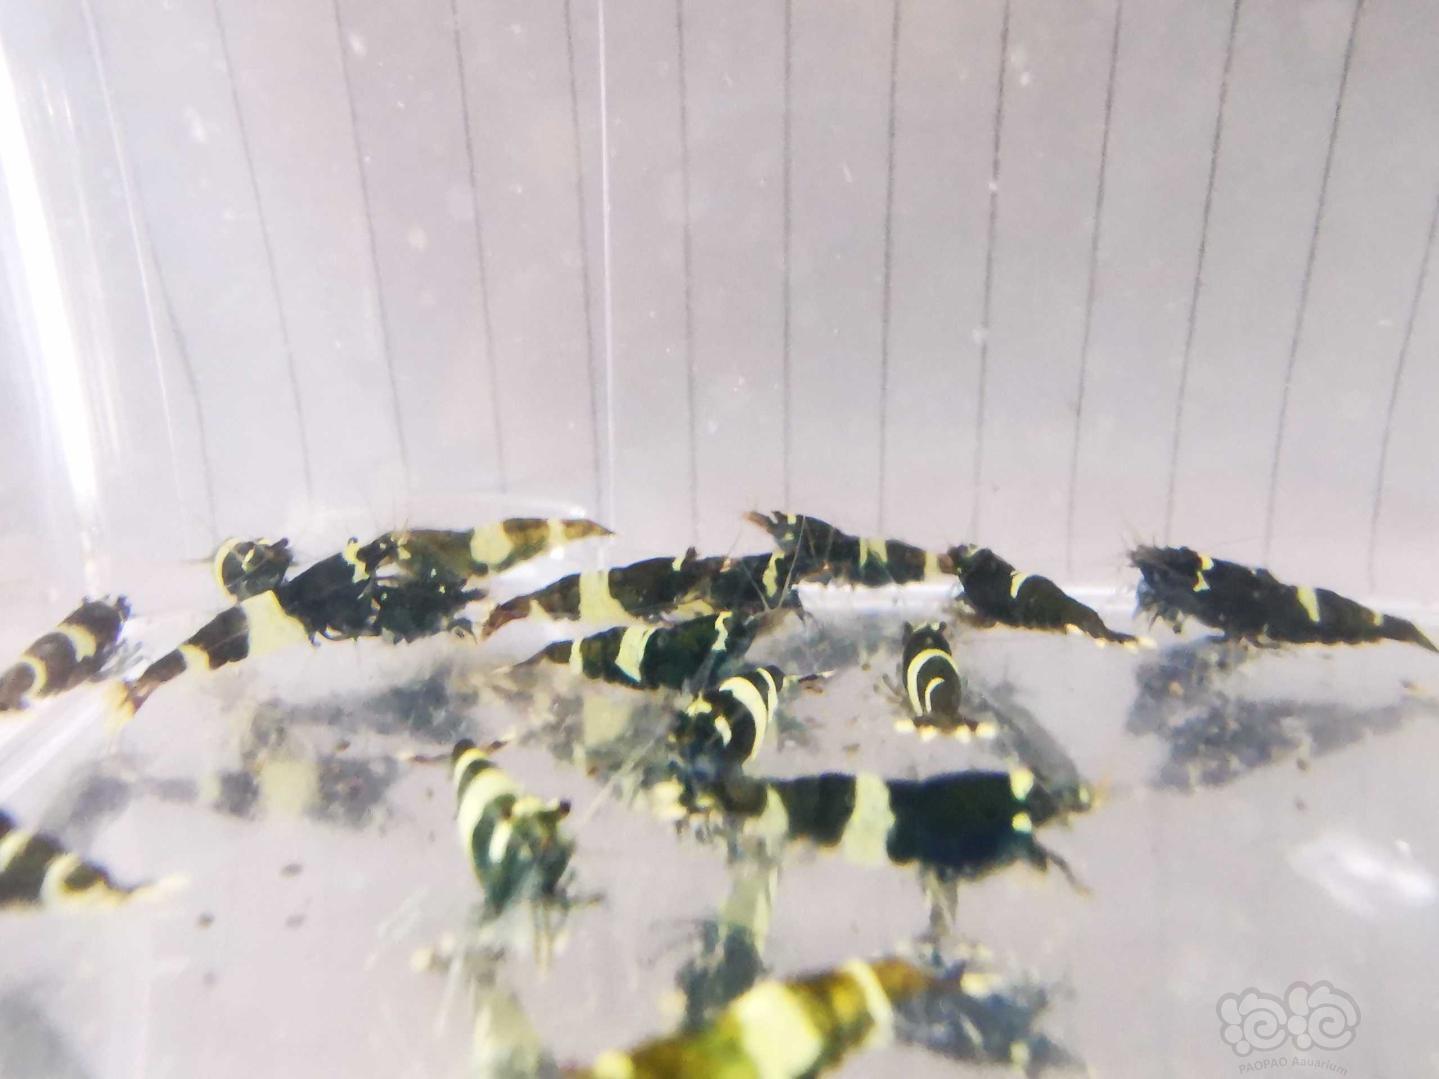 【虾】2019-12-07#RMB拍卖#系统缸淘汰蓝化黑金刚水晶虾一份32只公母对半(送一只同品相)-图3